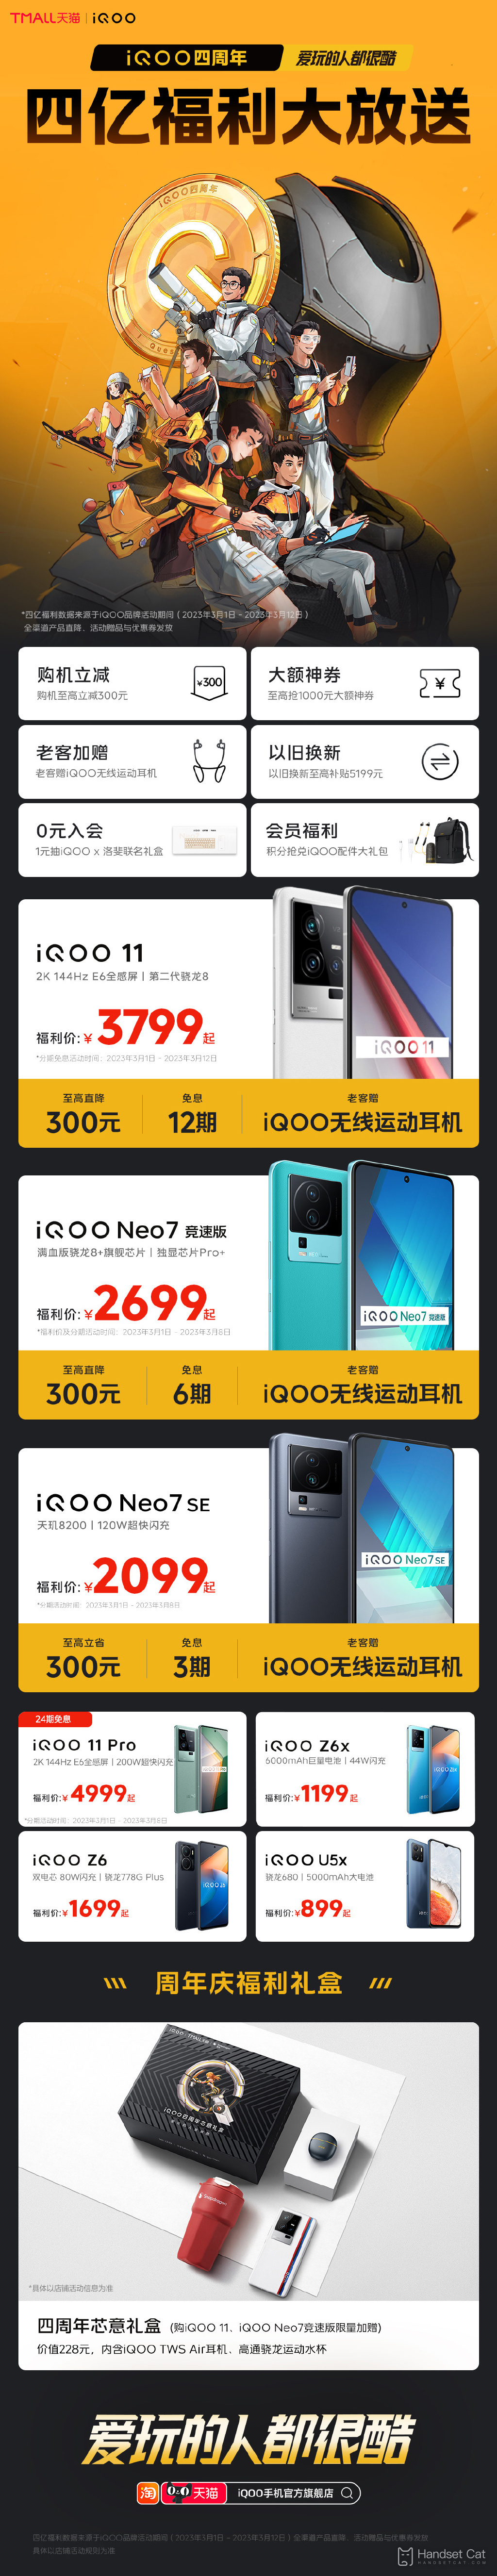 iQOO, 출시 4주년 맞아 iQOO 11 및 기타 모델 최대 300위안 할인 혜택 제공